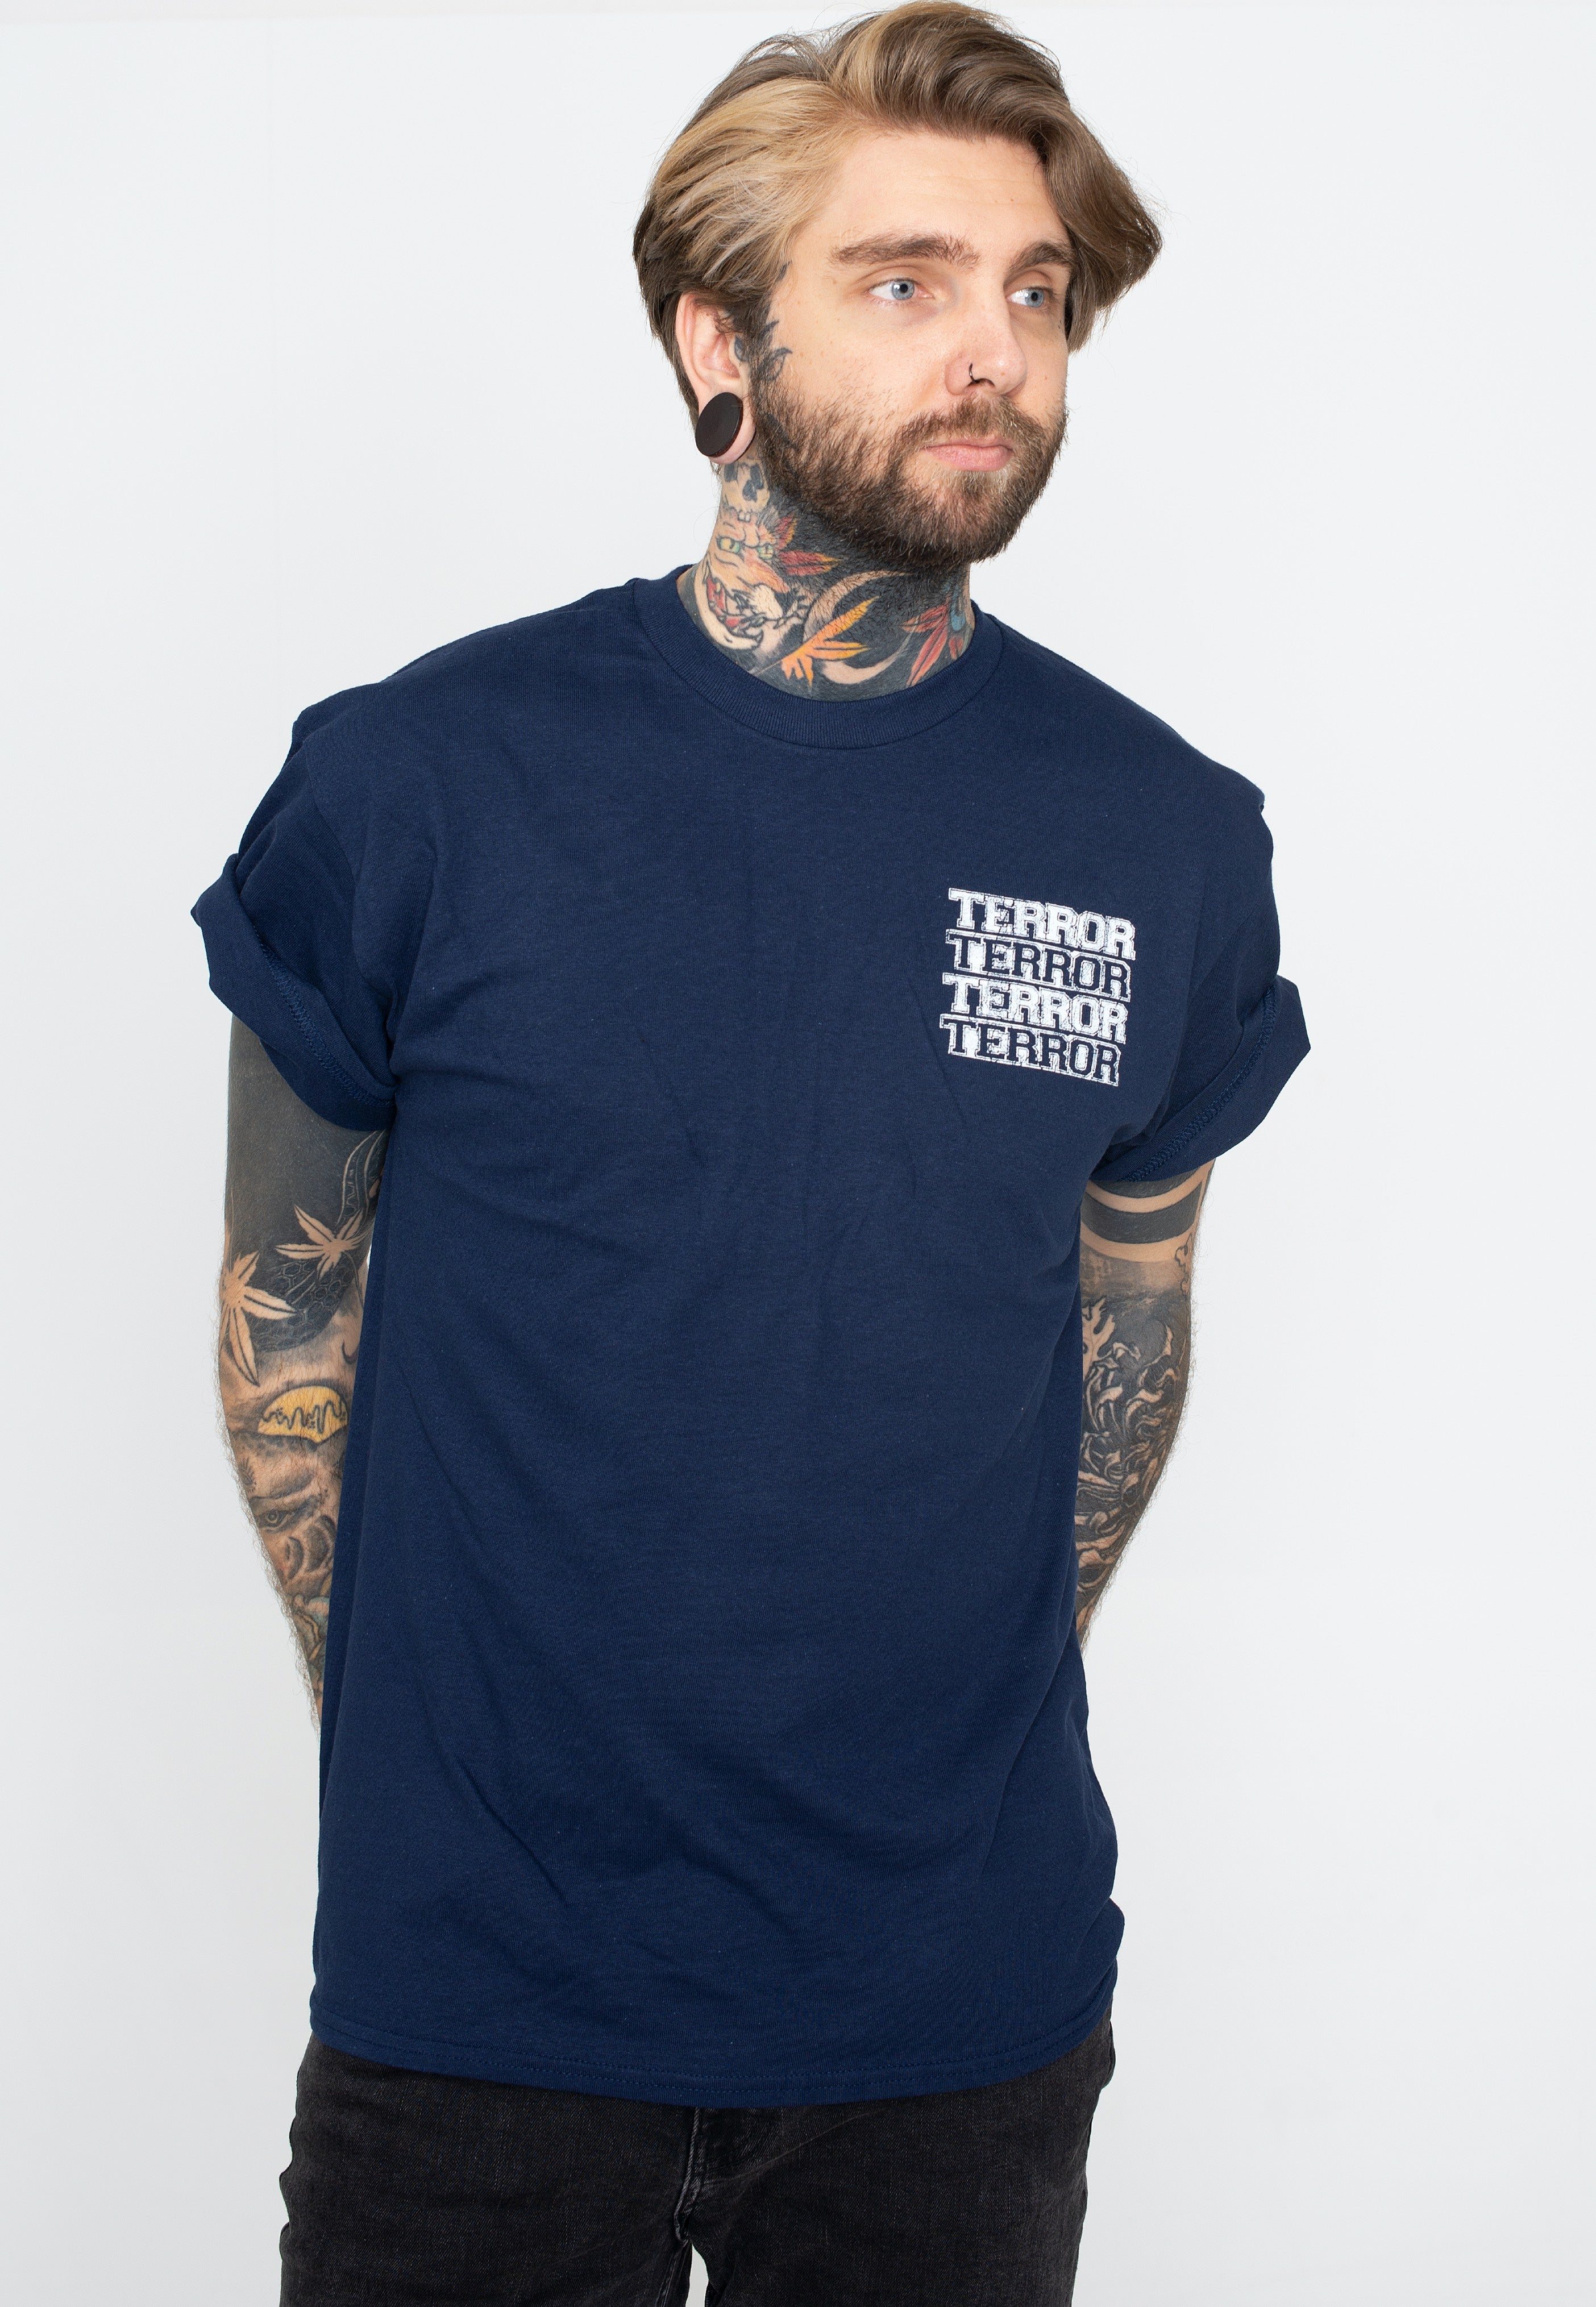 Terror - Underdog Navy - T-Shirt